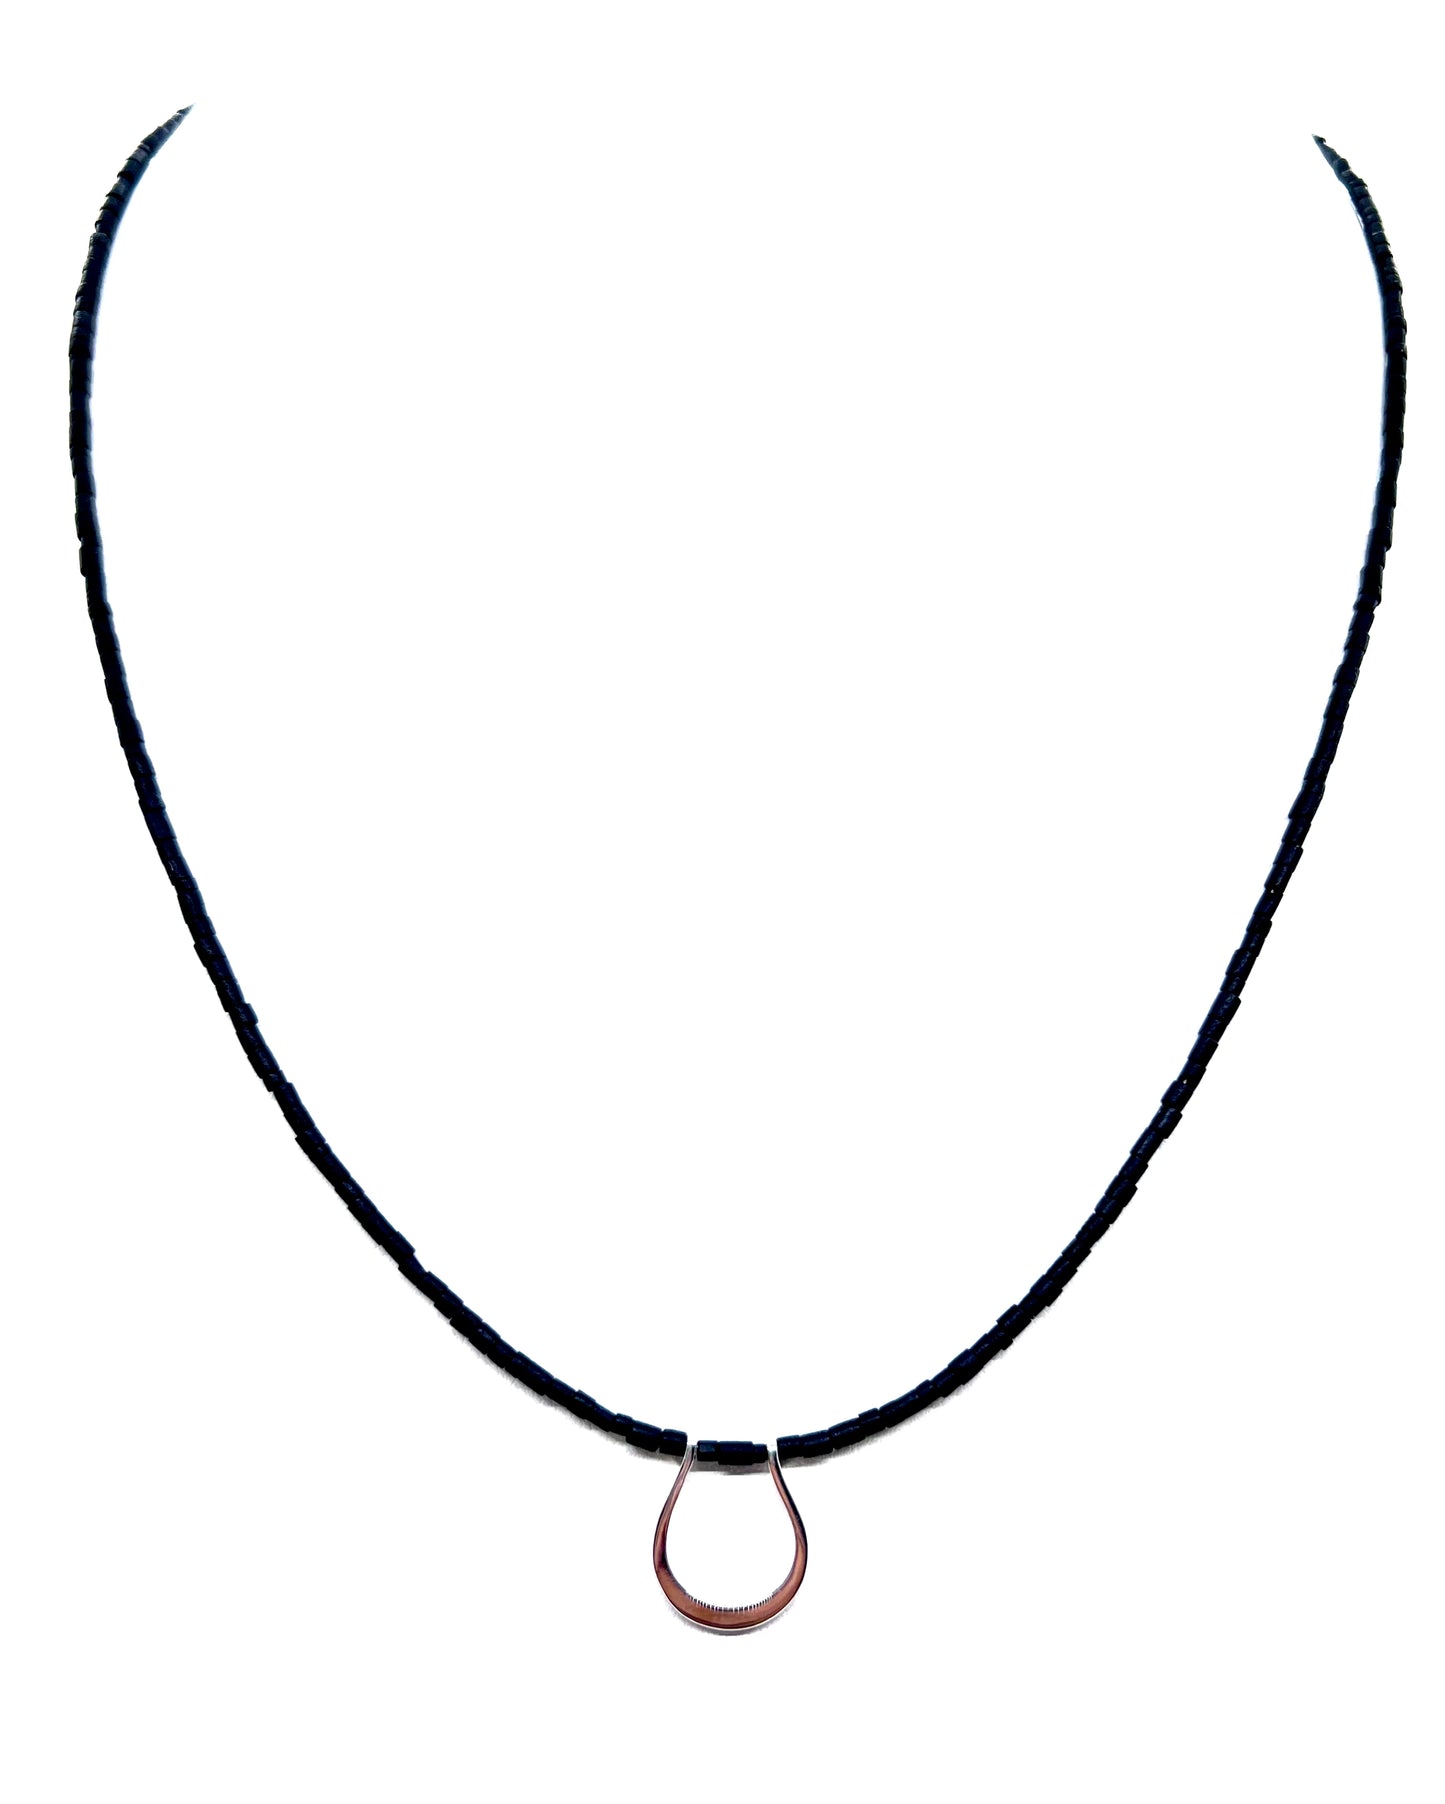 Horseshoe Pendant Necklace with Black Heishi Cut Beads